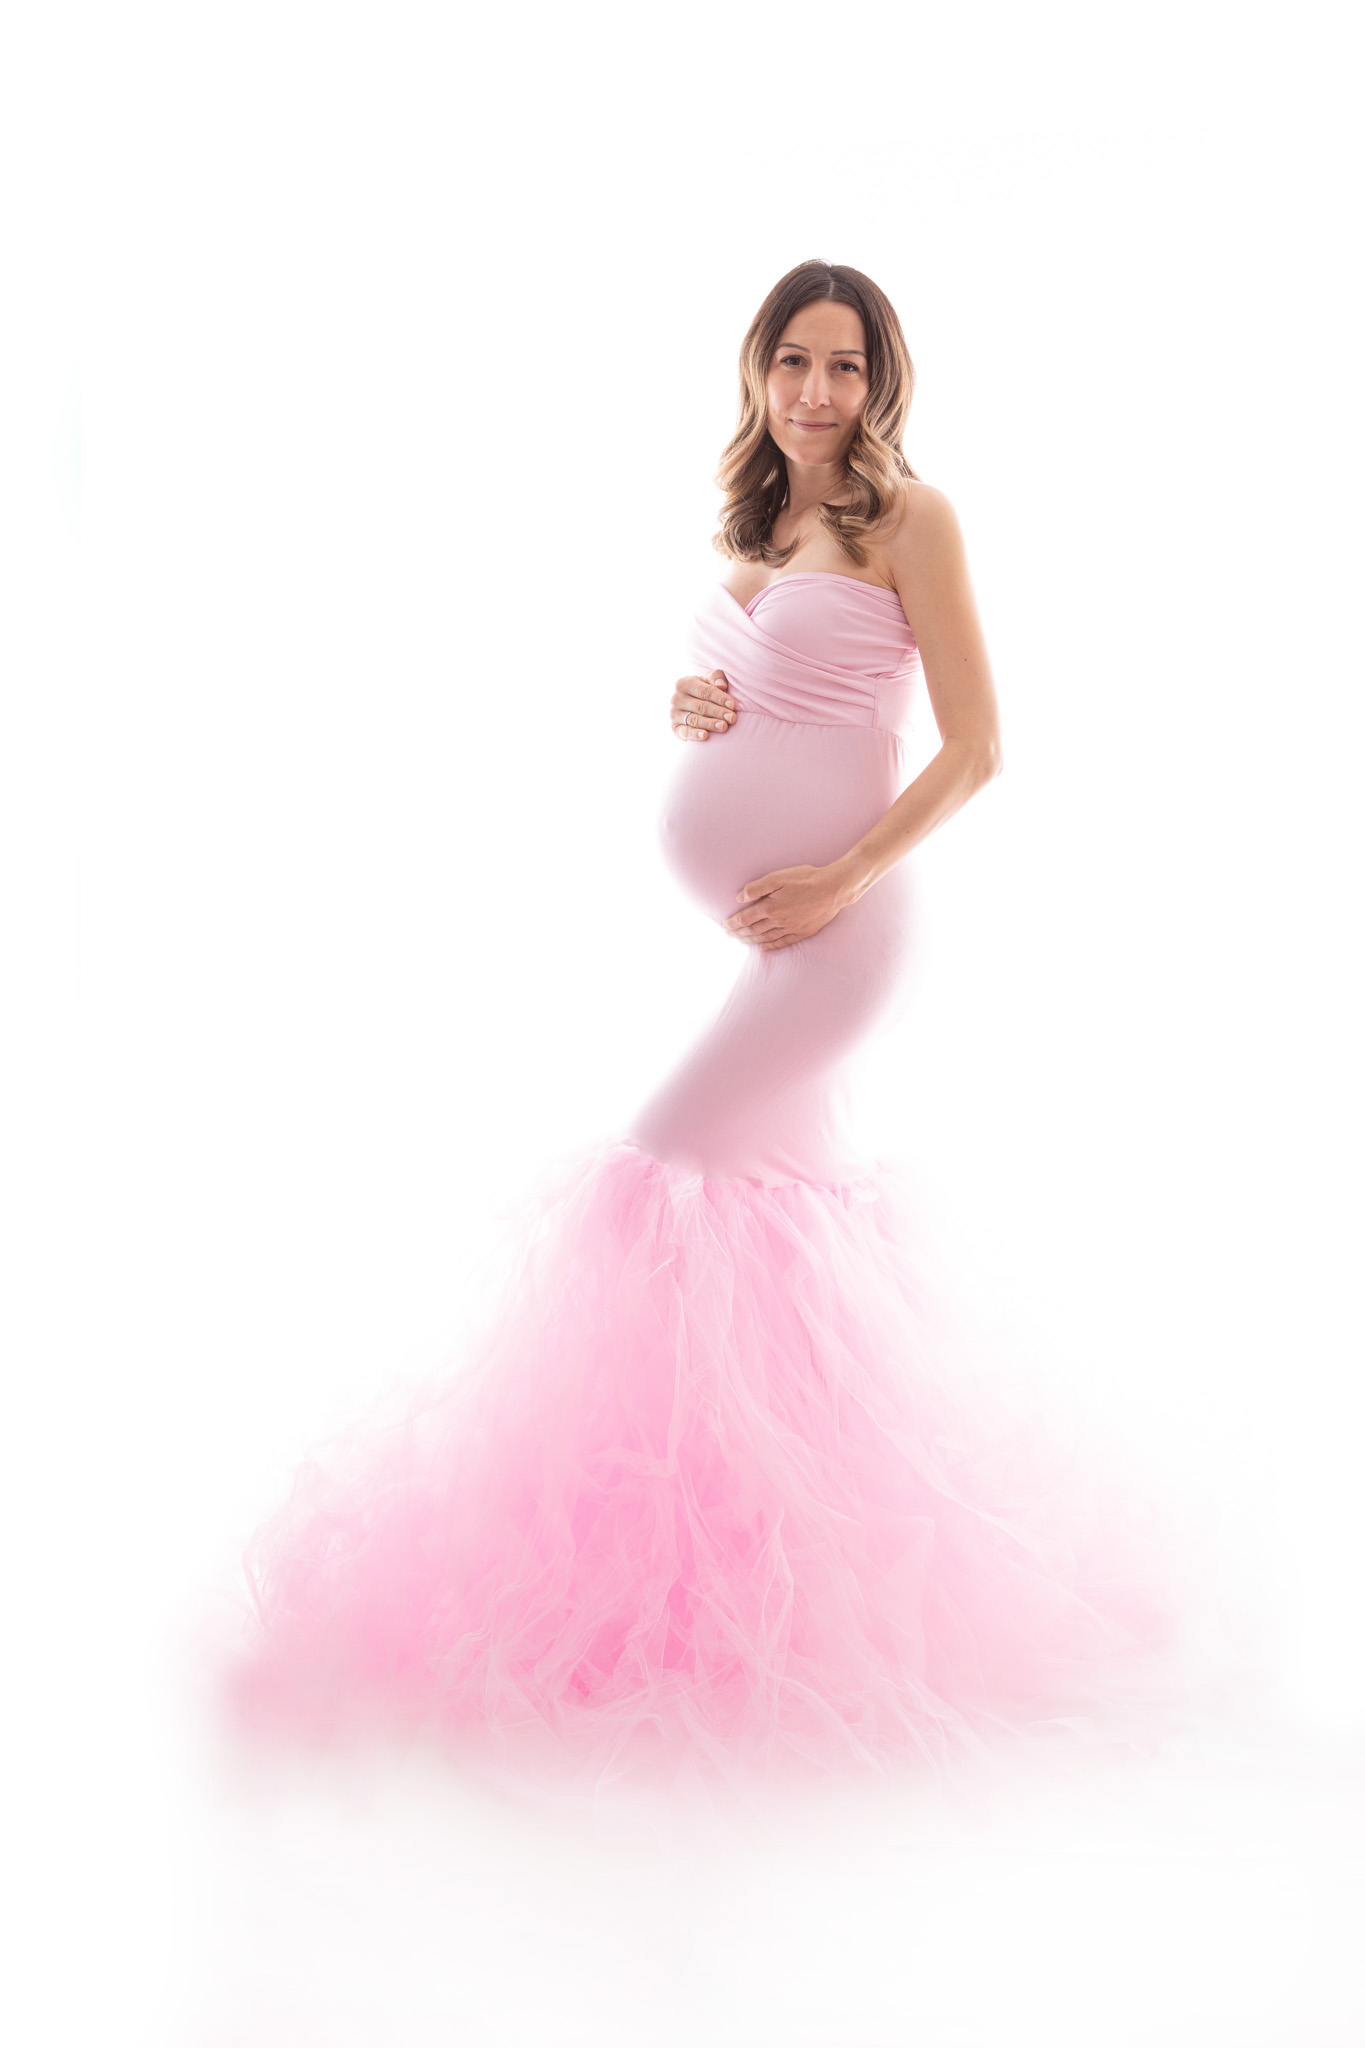 Schwangere in einem rosa kleid mit einem Tüllrock. Babybauchshooting Carina Rosen